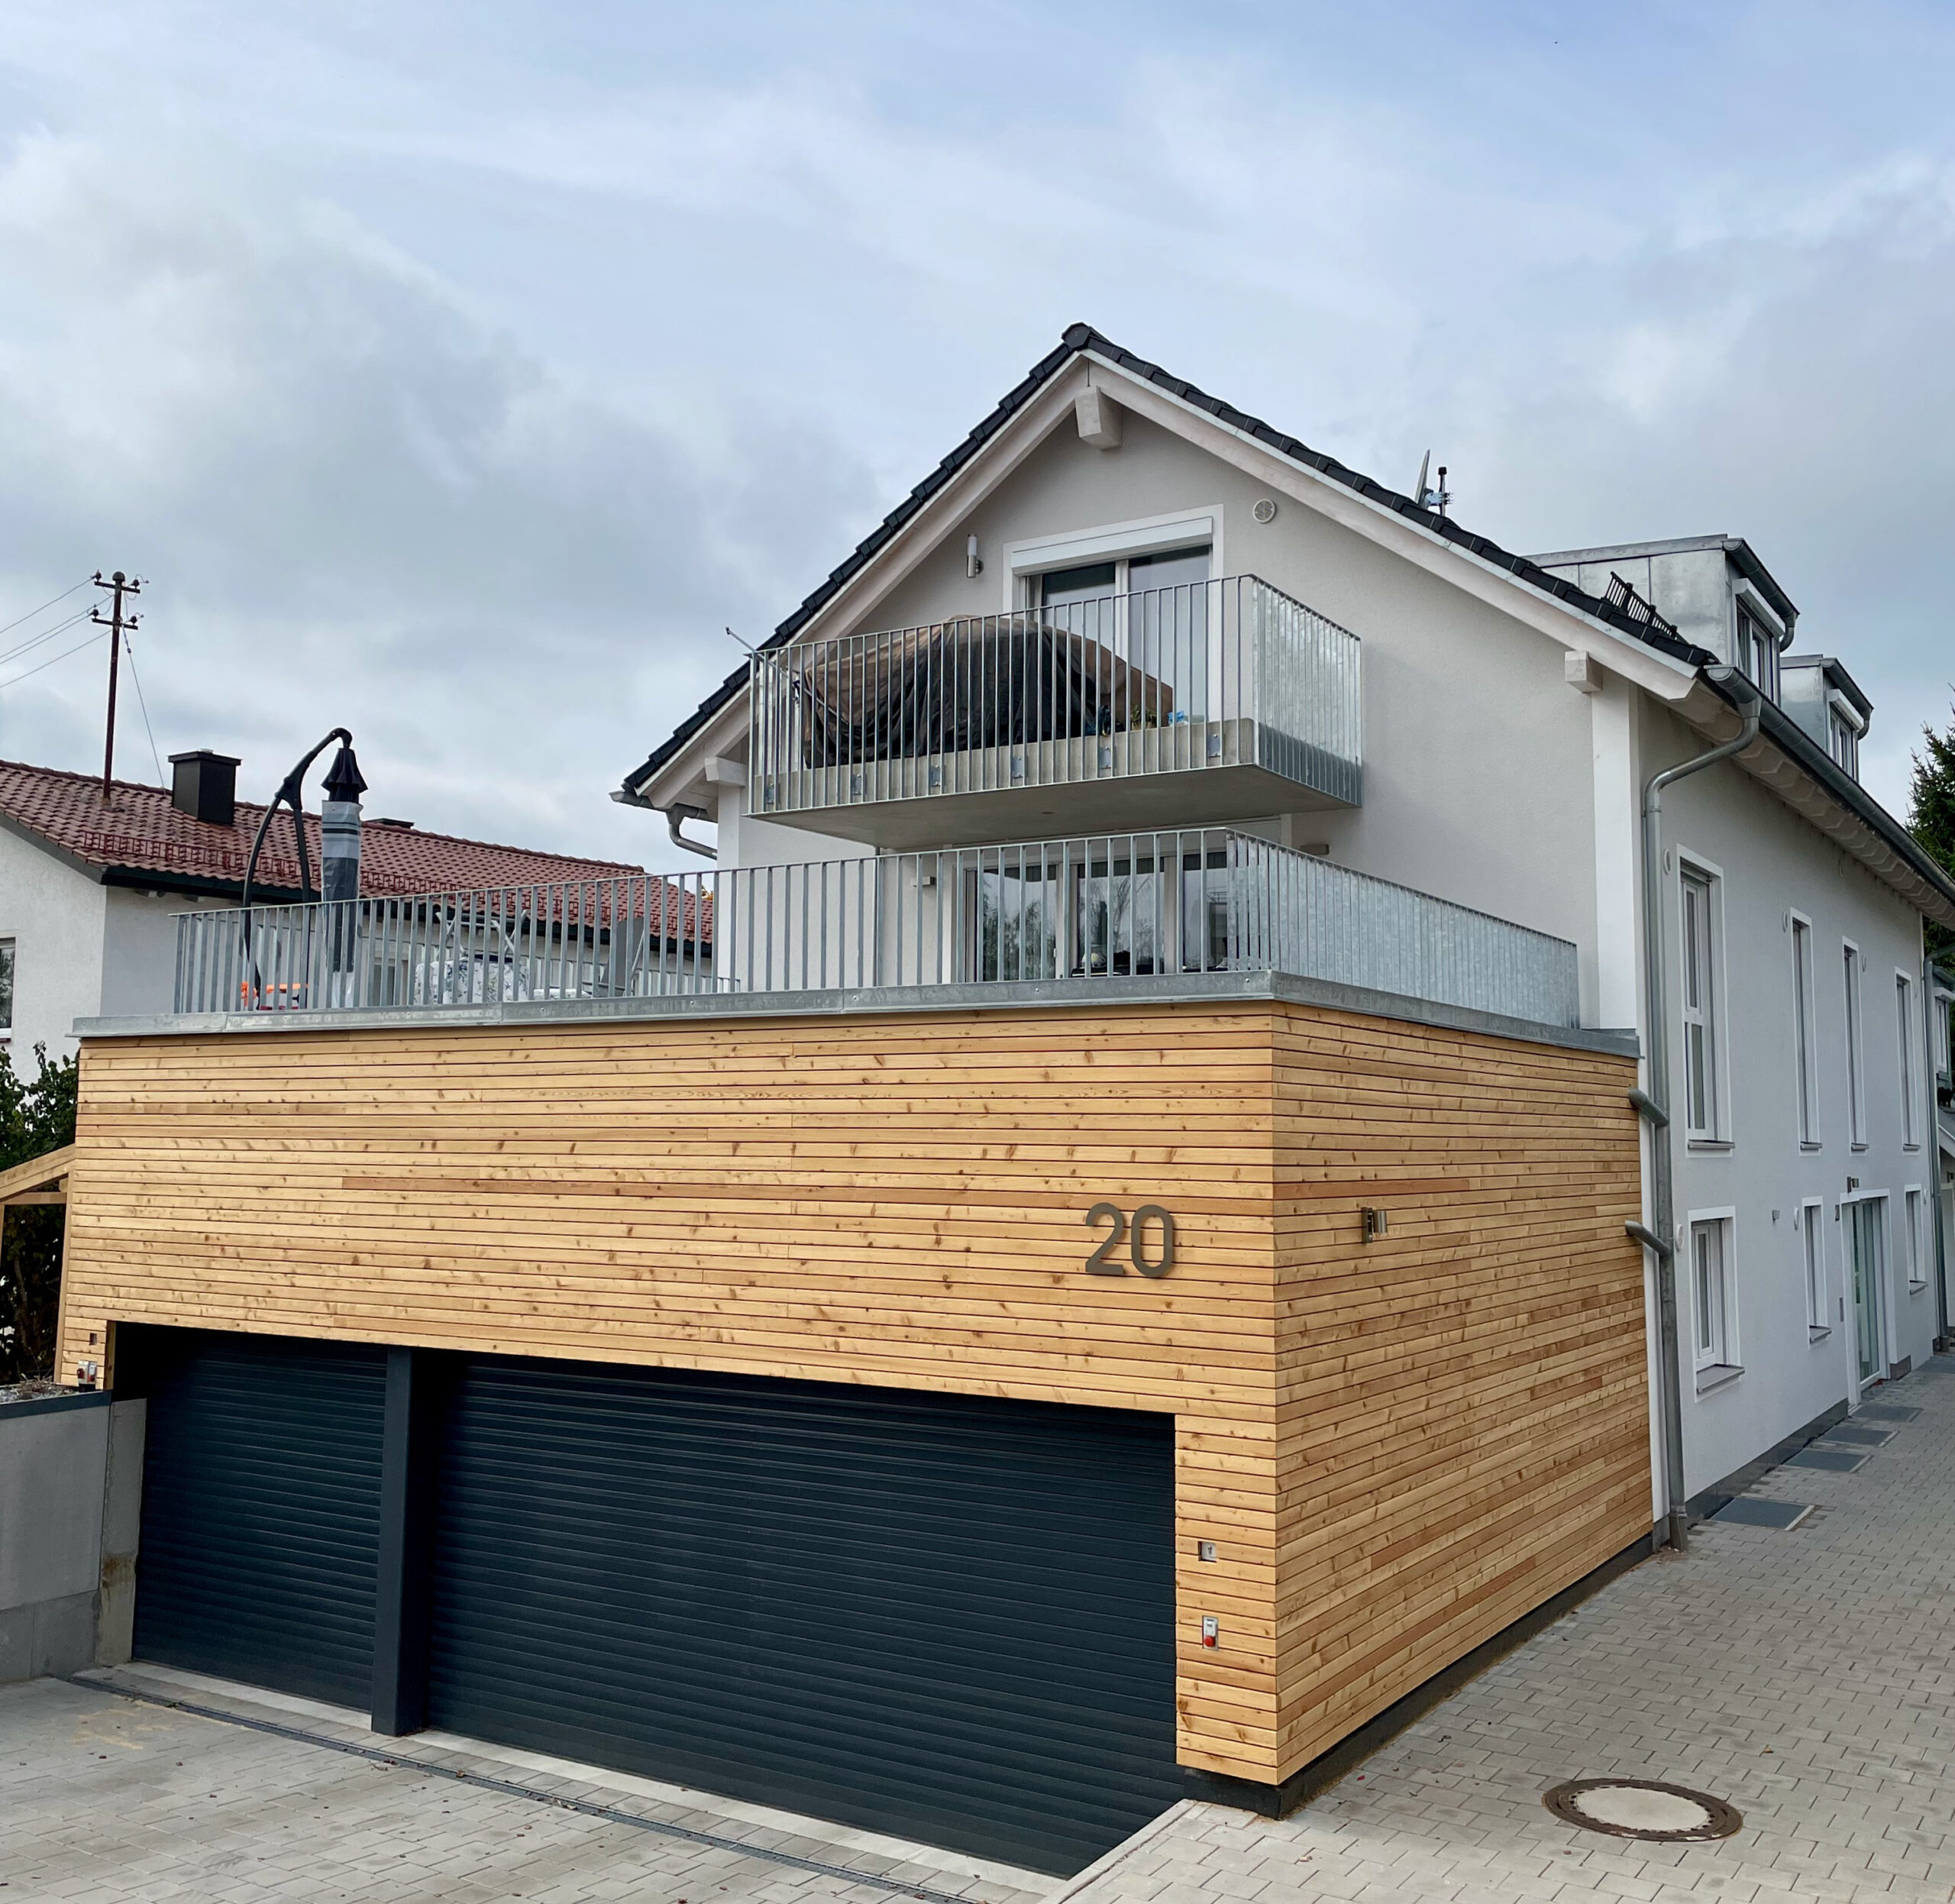 Mehrfamilienhaus mit Duplex-Parker in Holzfassade. Front-Ansicht, Architektur, Fürstenfeldbruck